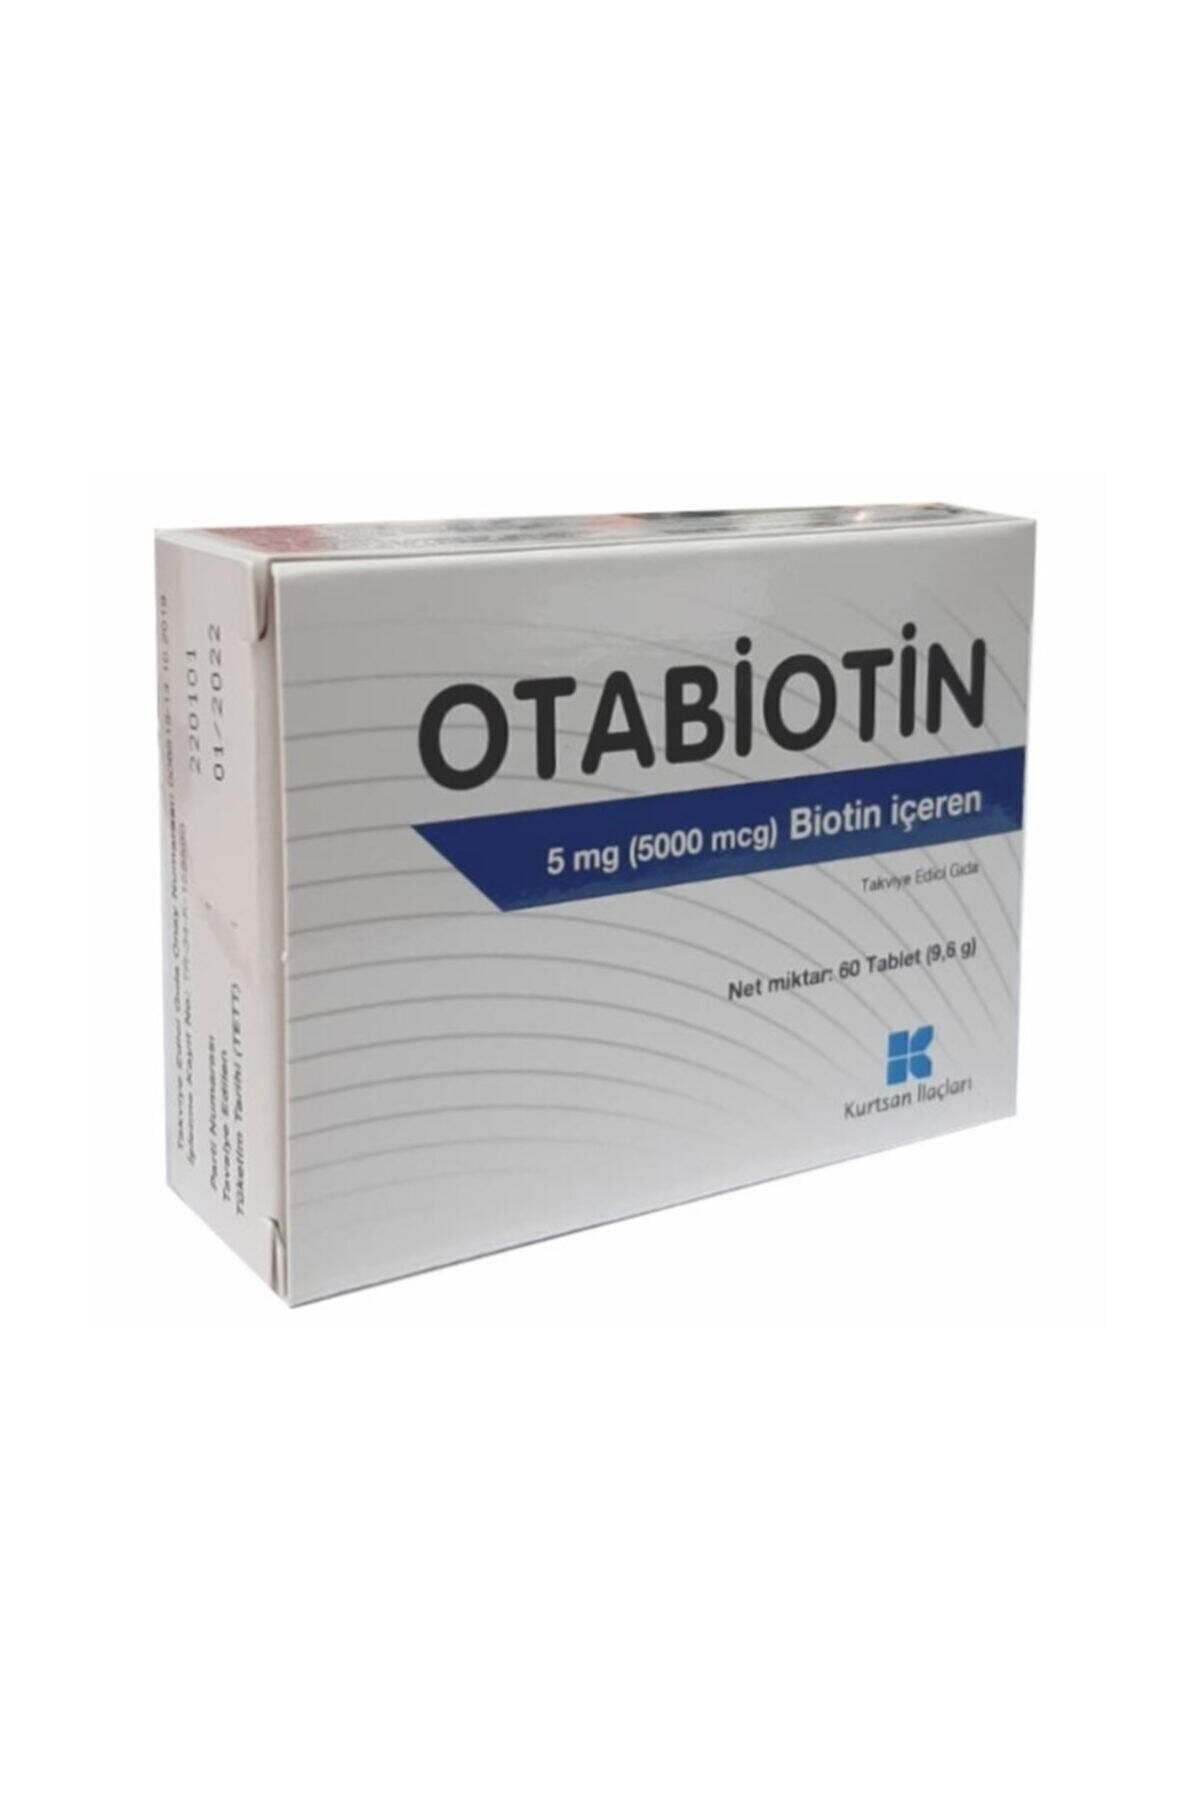 Kurtsan Otabiotin 5 Mg Biotin Içeren Takviye Edici Gıda 60 Tablet